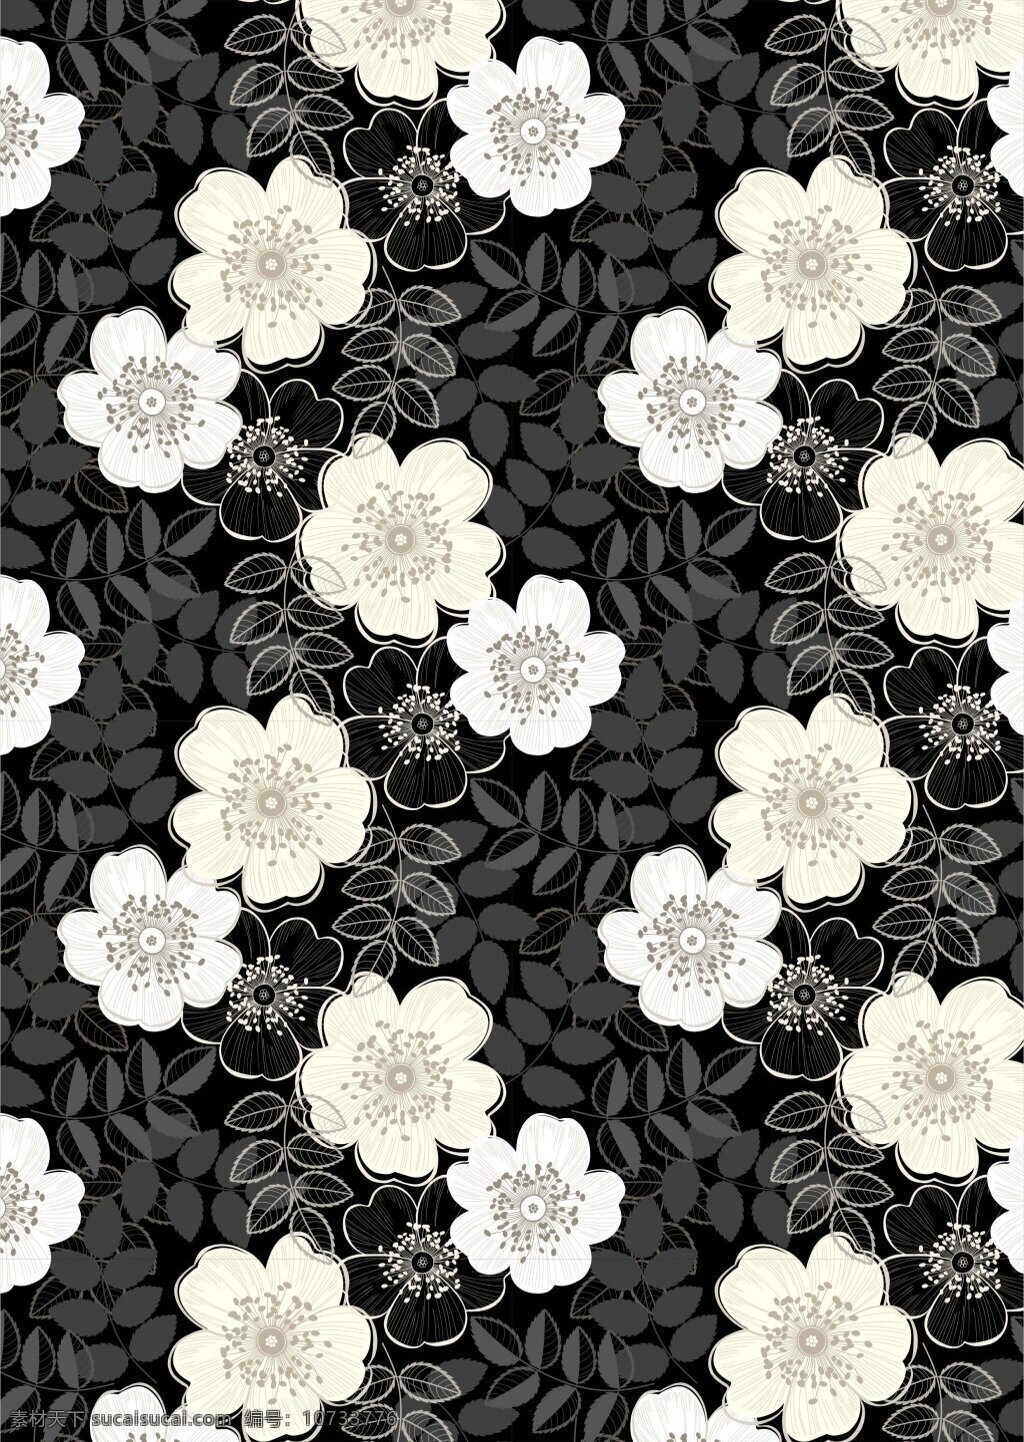 个性 黑色 底纹 灰色 树叶 广告 背景 白色花卉 广告背景 黑色底纹 灰色树叶 植物花卉